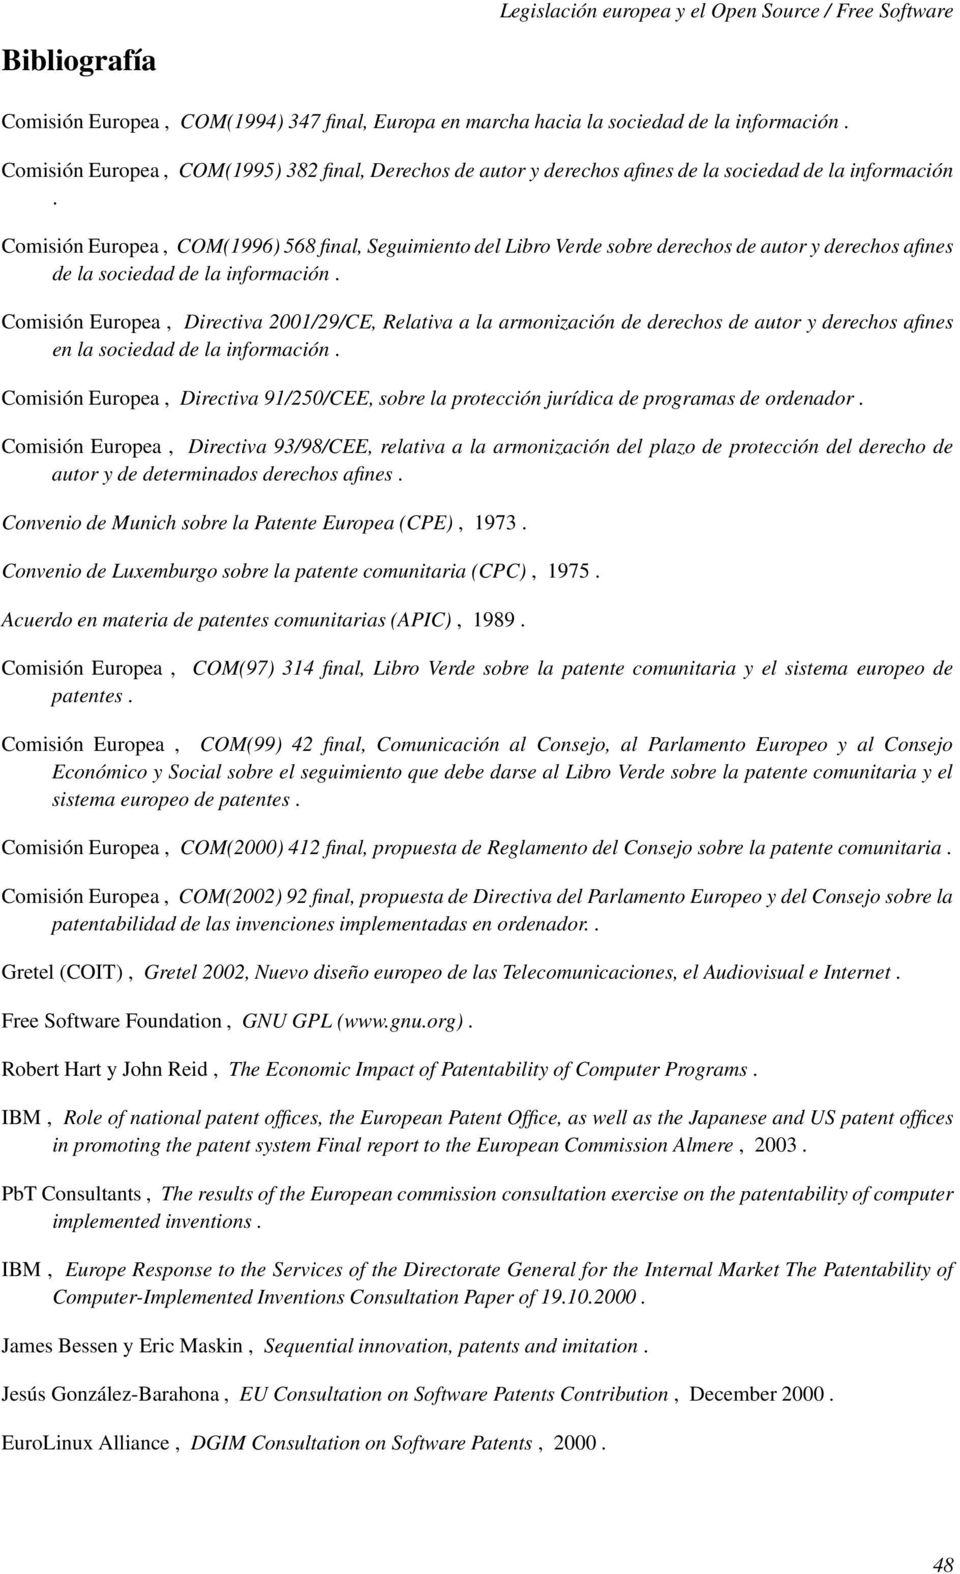 Comisión Europea, COM(1996) 568 final, Seguimiento del Libro Verde sobre derechos de autor y derechos afines de la sociedad de la información.